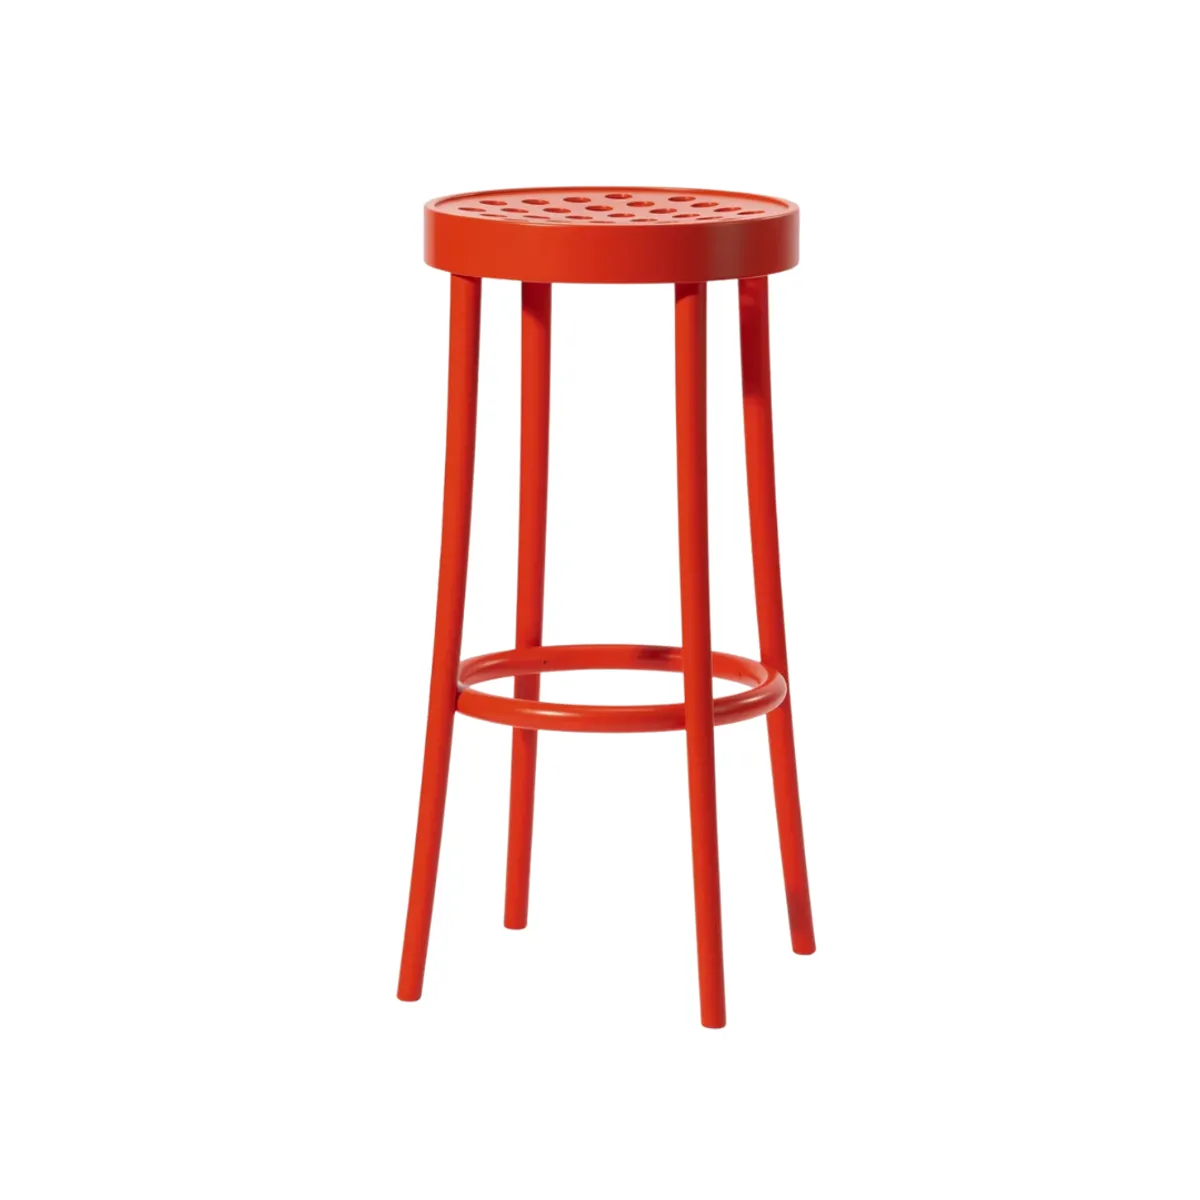 Max bar stool 1